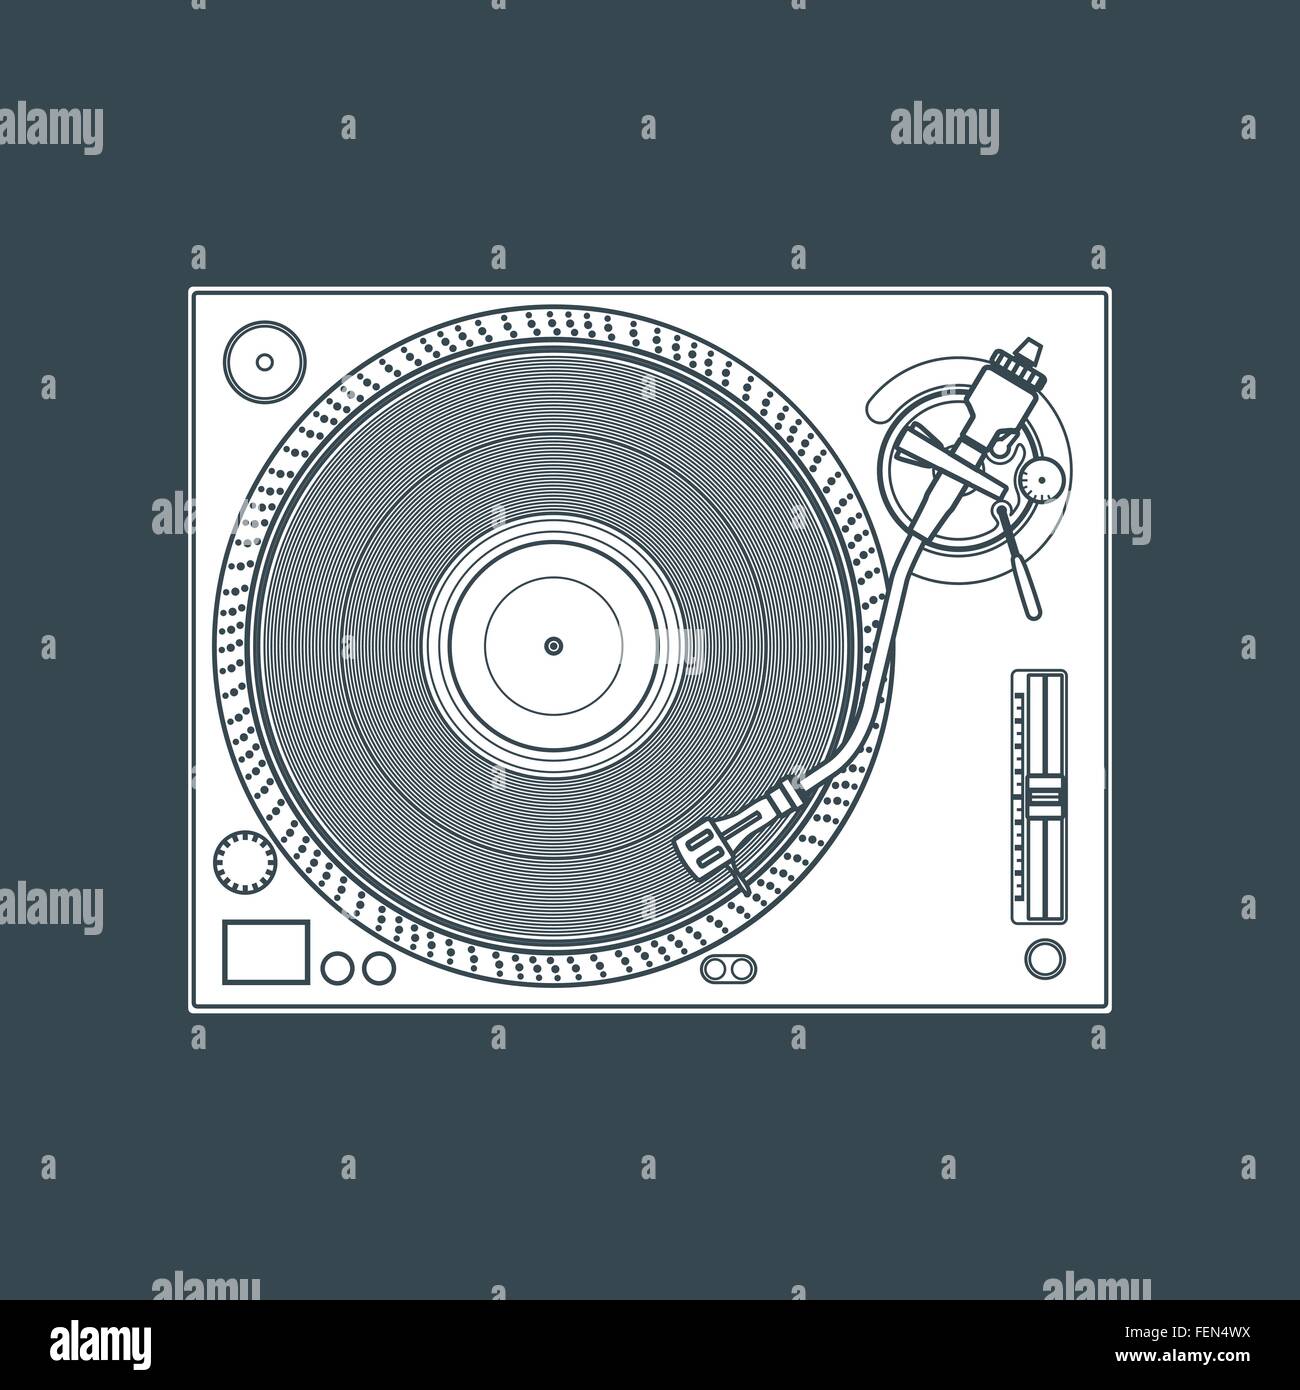 Vektor-weiße Vinyl dj Plattenspieler dunklen Hintergrund in Volltonfarbe Stock Vektor